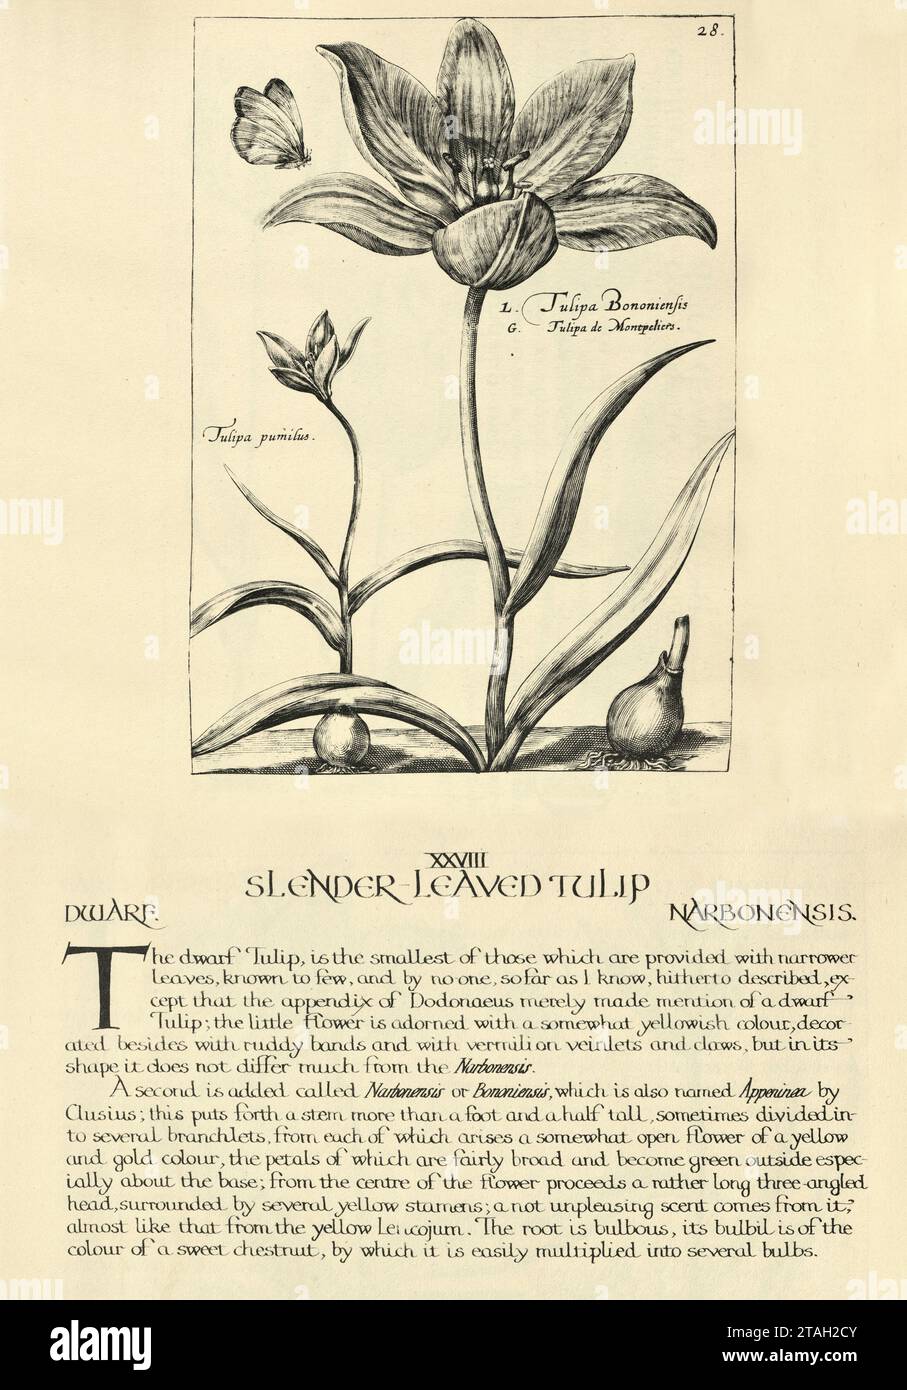 Impression d'art botanique de tulipe à feuilles minces, nain, Narbonensis, de Hortus Floridus par Crispin de passe, illustration vintage, 17e siècle Banque D'Images